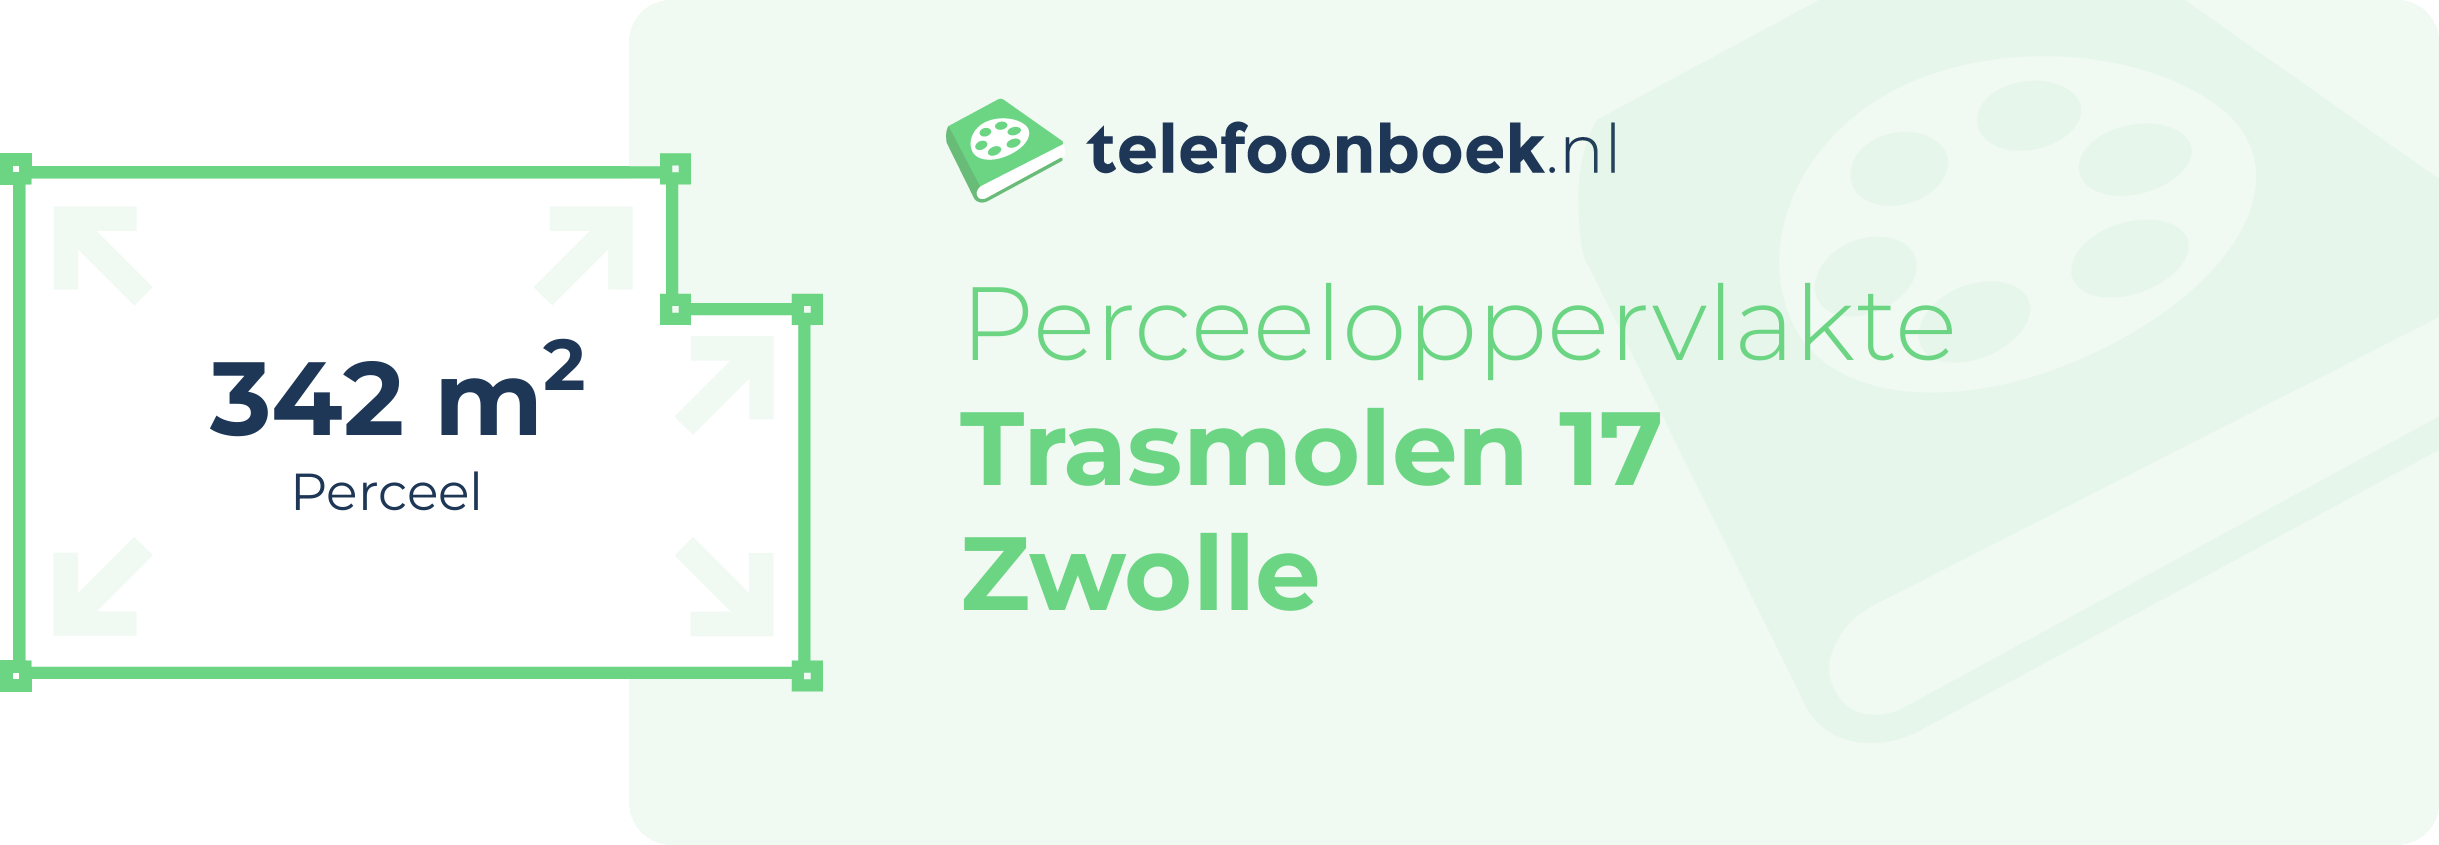 Perceeloppervlakte Trasmolen 17 Zwolle